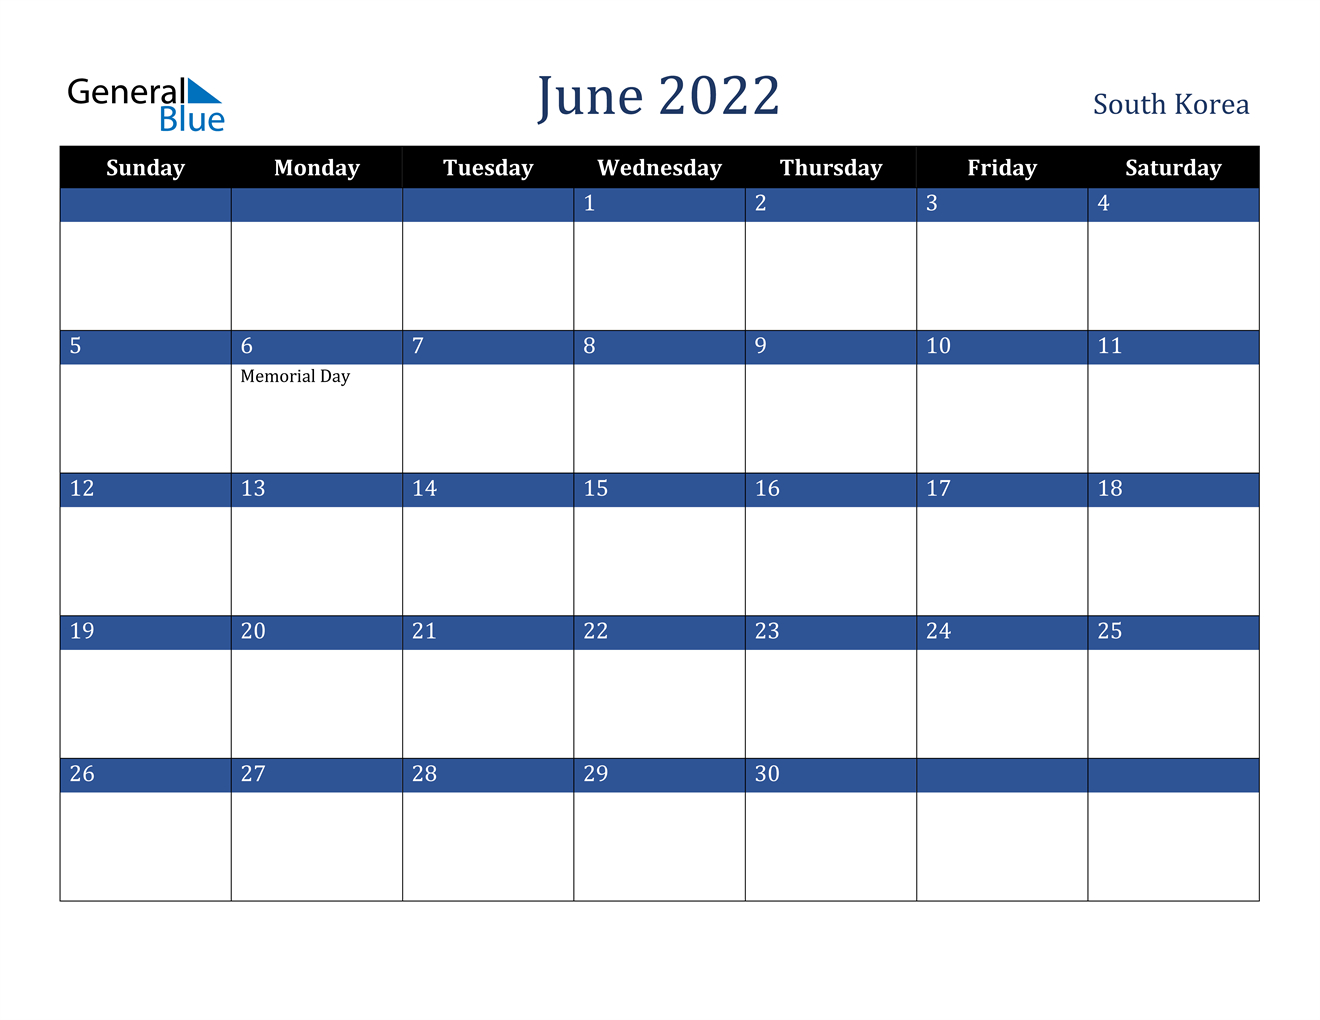 June 2022 Calendar - South Korea